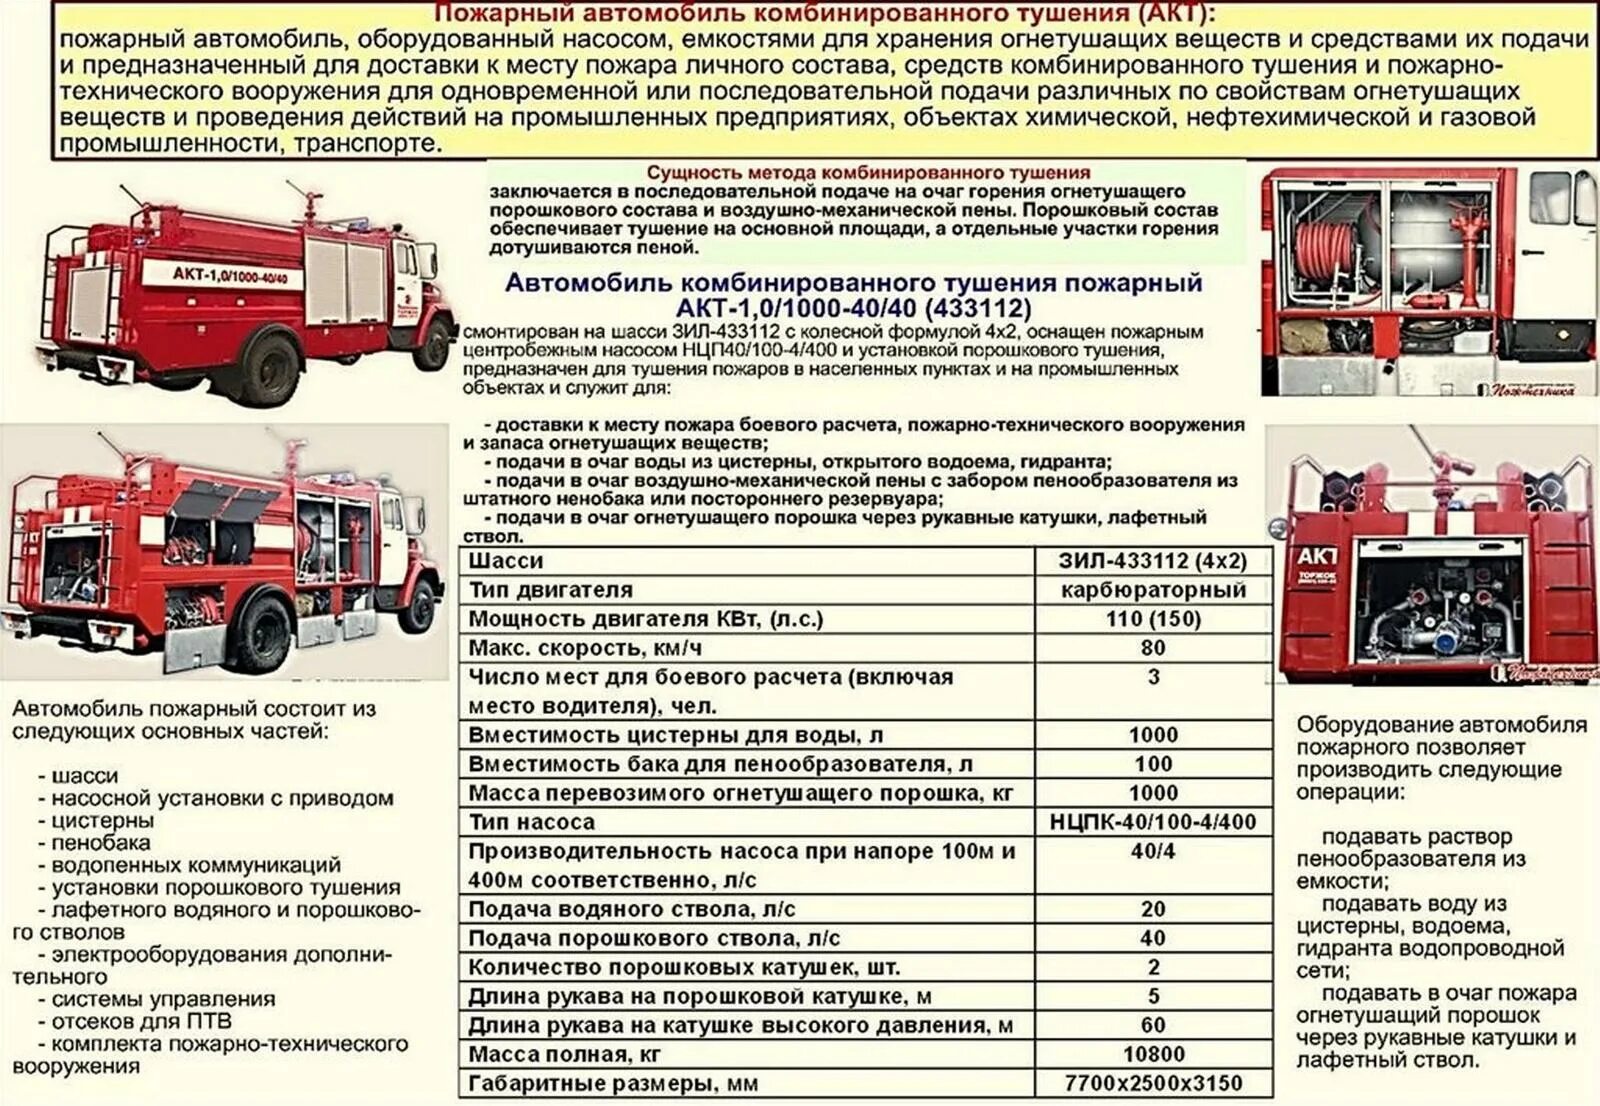 Управление пожарными автомобилями. ТТХ пожарного автомобиля КАМАЗ. ТТХ КАМАЗ 53215 пожарного автомобиля. ТТХ 43118 пожарного автомобиля. Масса пожарного автомобиля КАМАЗ.